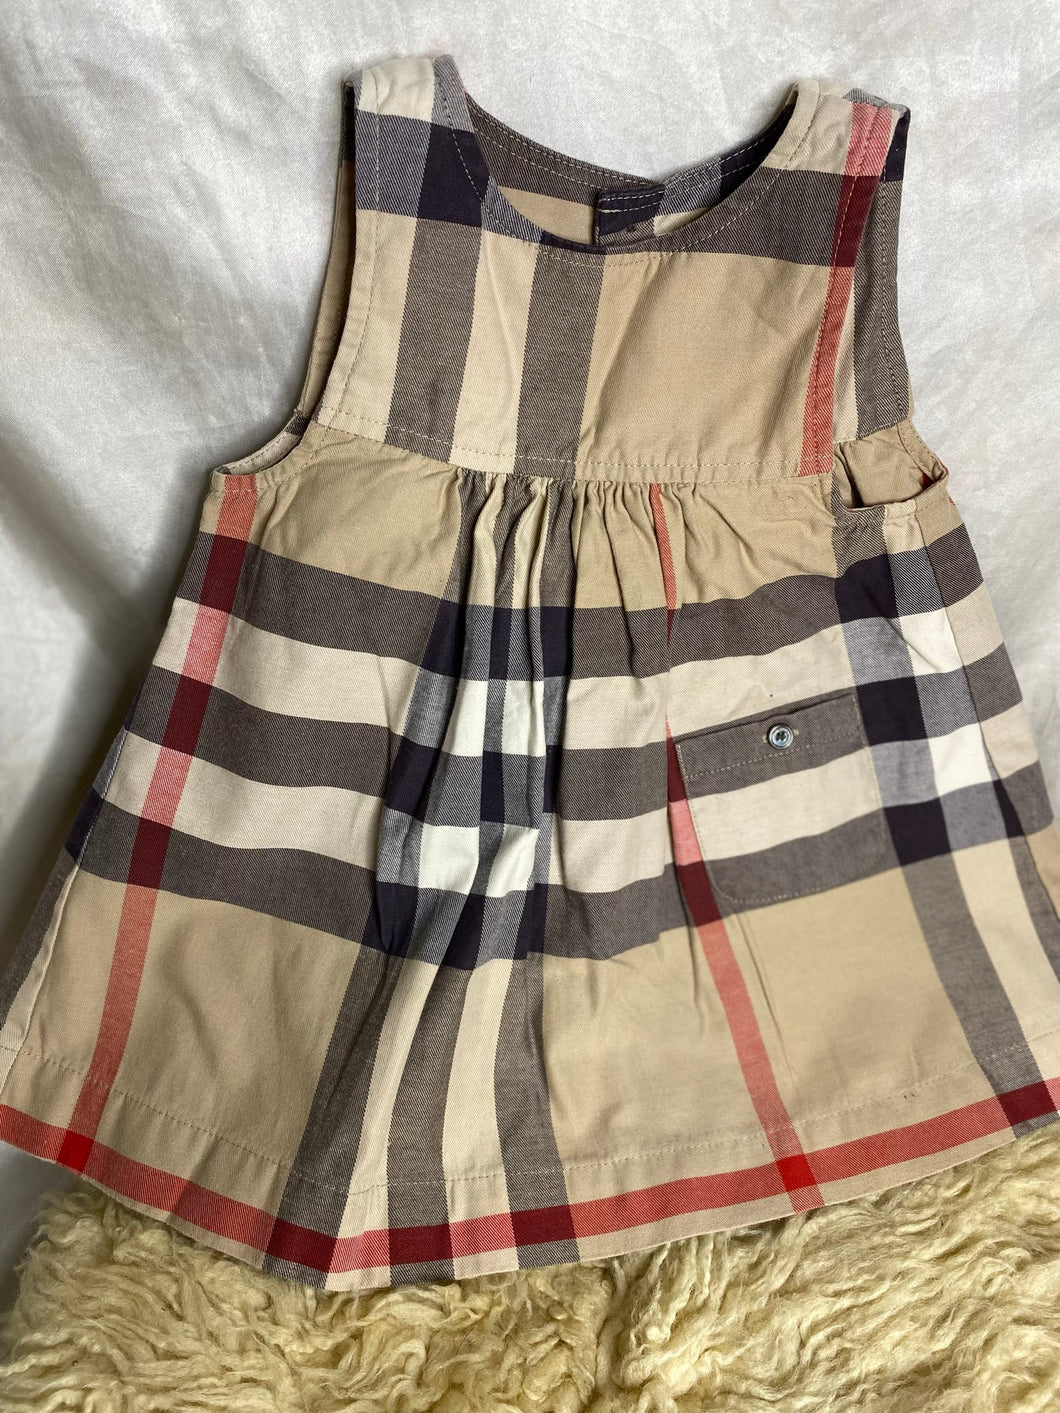 Burberry Classic Waist Hug Summer Dress - Girls 12 months